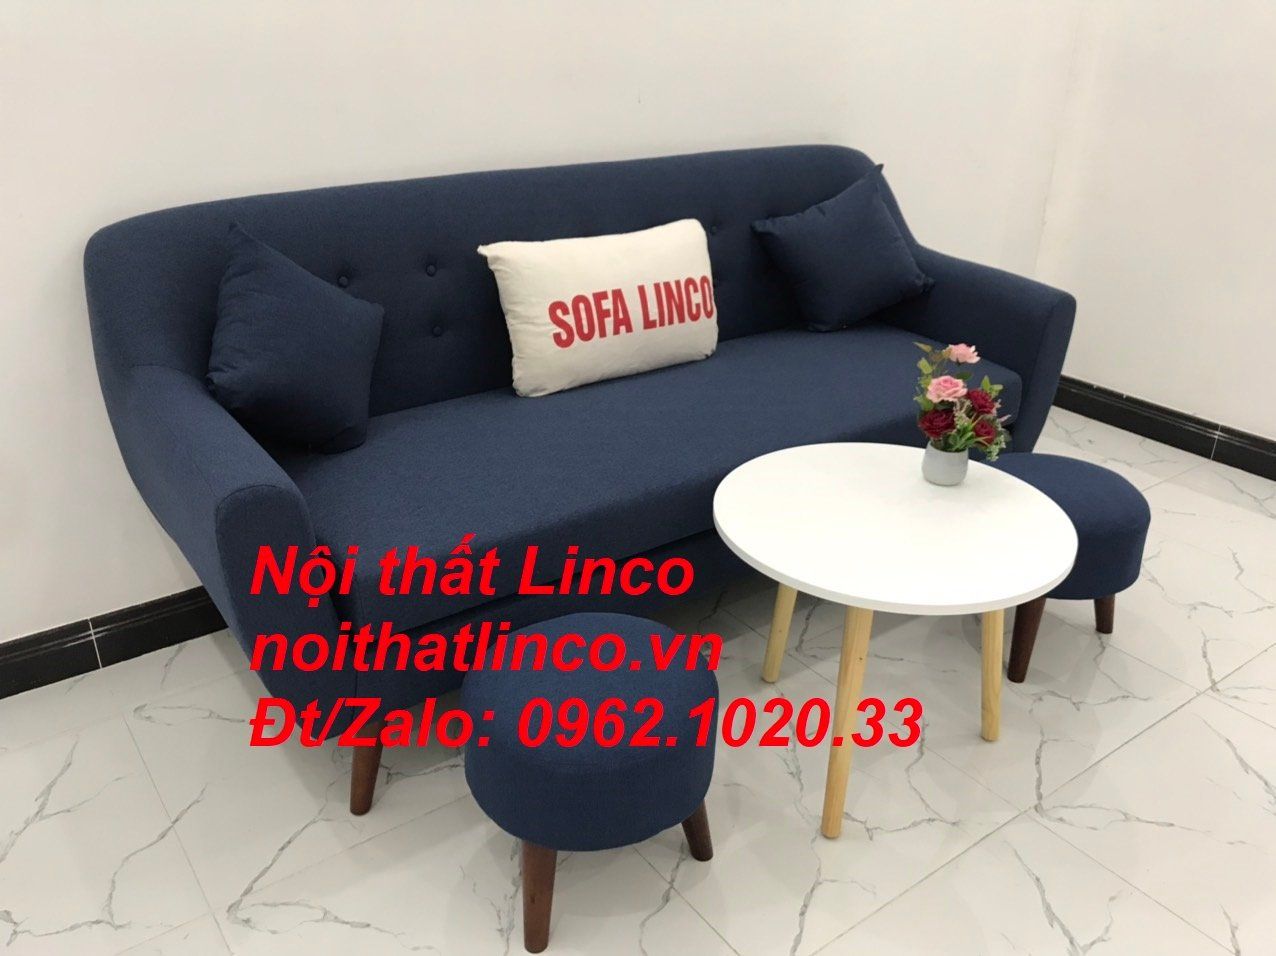  Bộ bàn ghế salon sofa băng xanh dương đậm đen Nội thất Linco Sài Gòn 